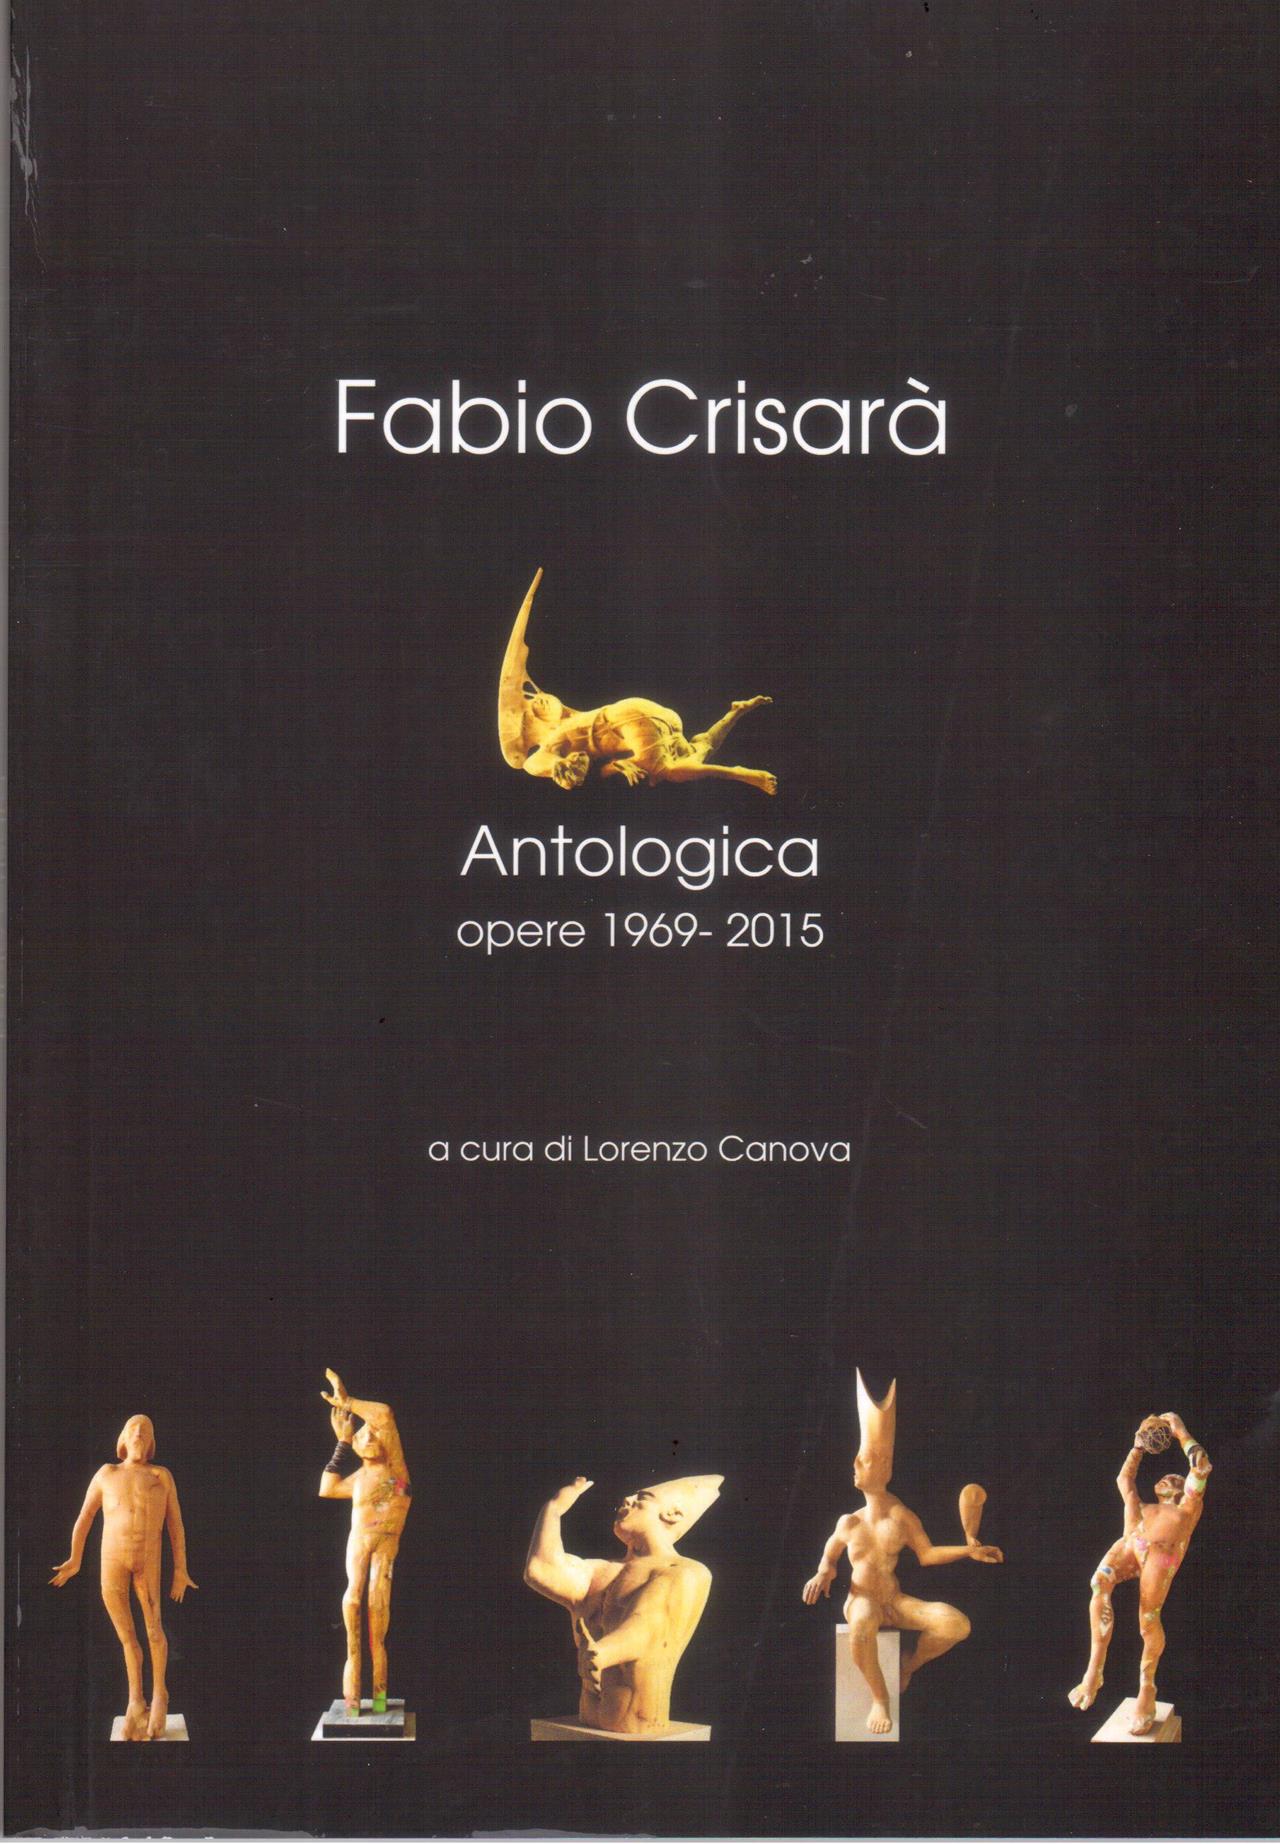 Fabio Crisarà. Antologica. Opere 1969-2015